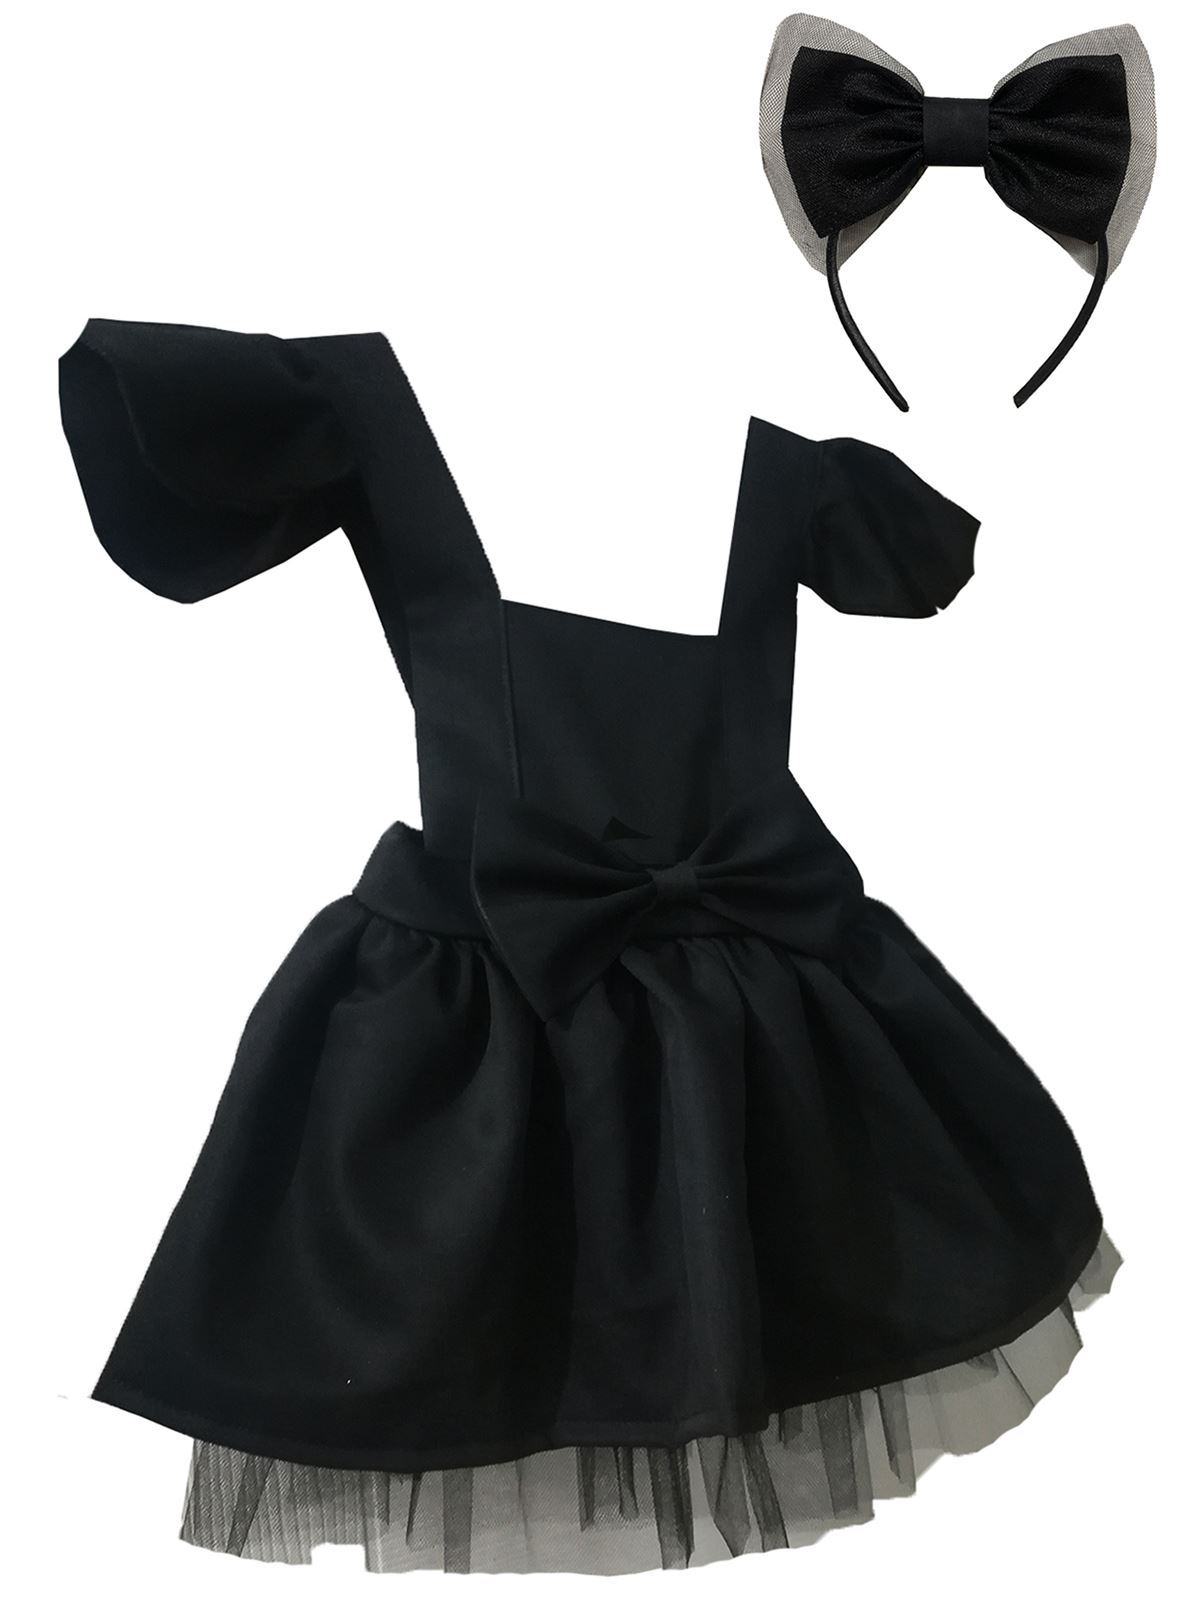 Shecco Babba Kız Çocuk Fırfırlı Tütü Elbise Taç Takım 6-10 Yaş Siyah